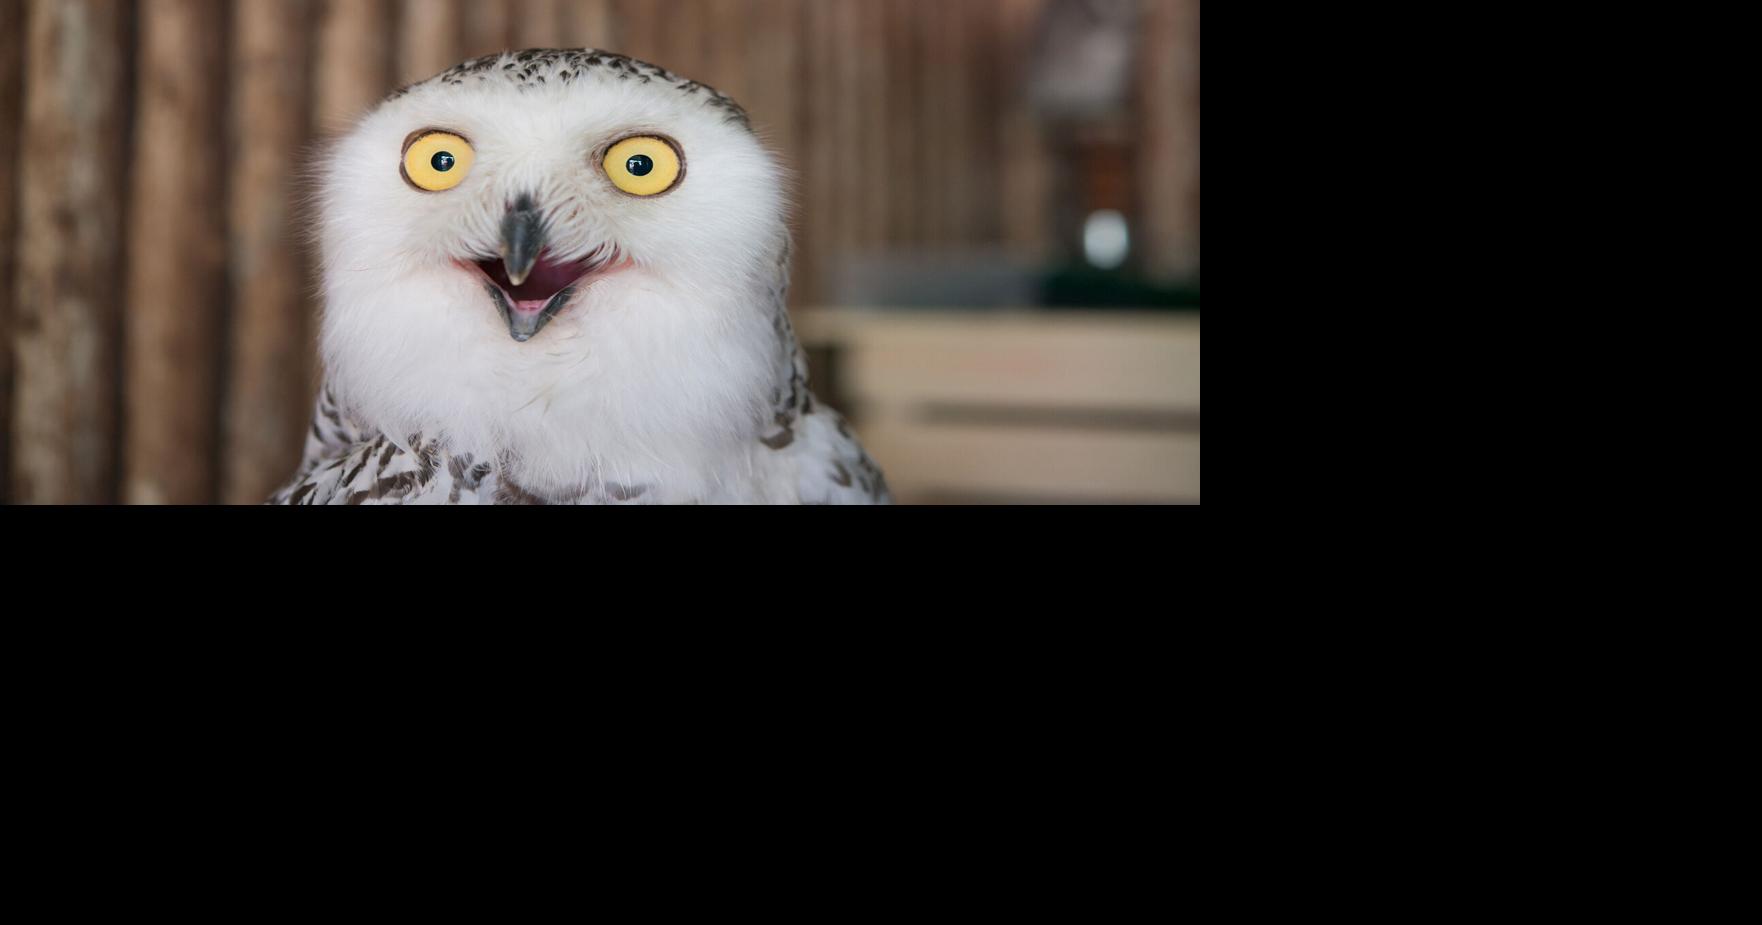 Superb Owl Sunday – Feathered Photography